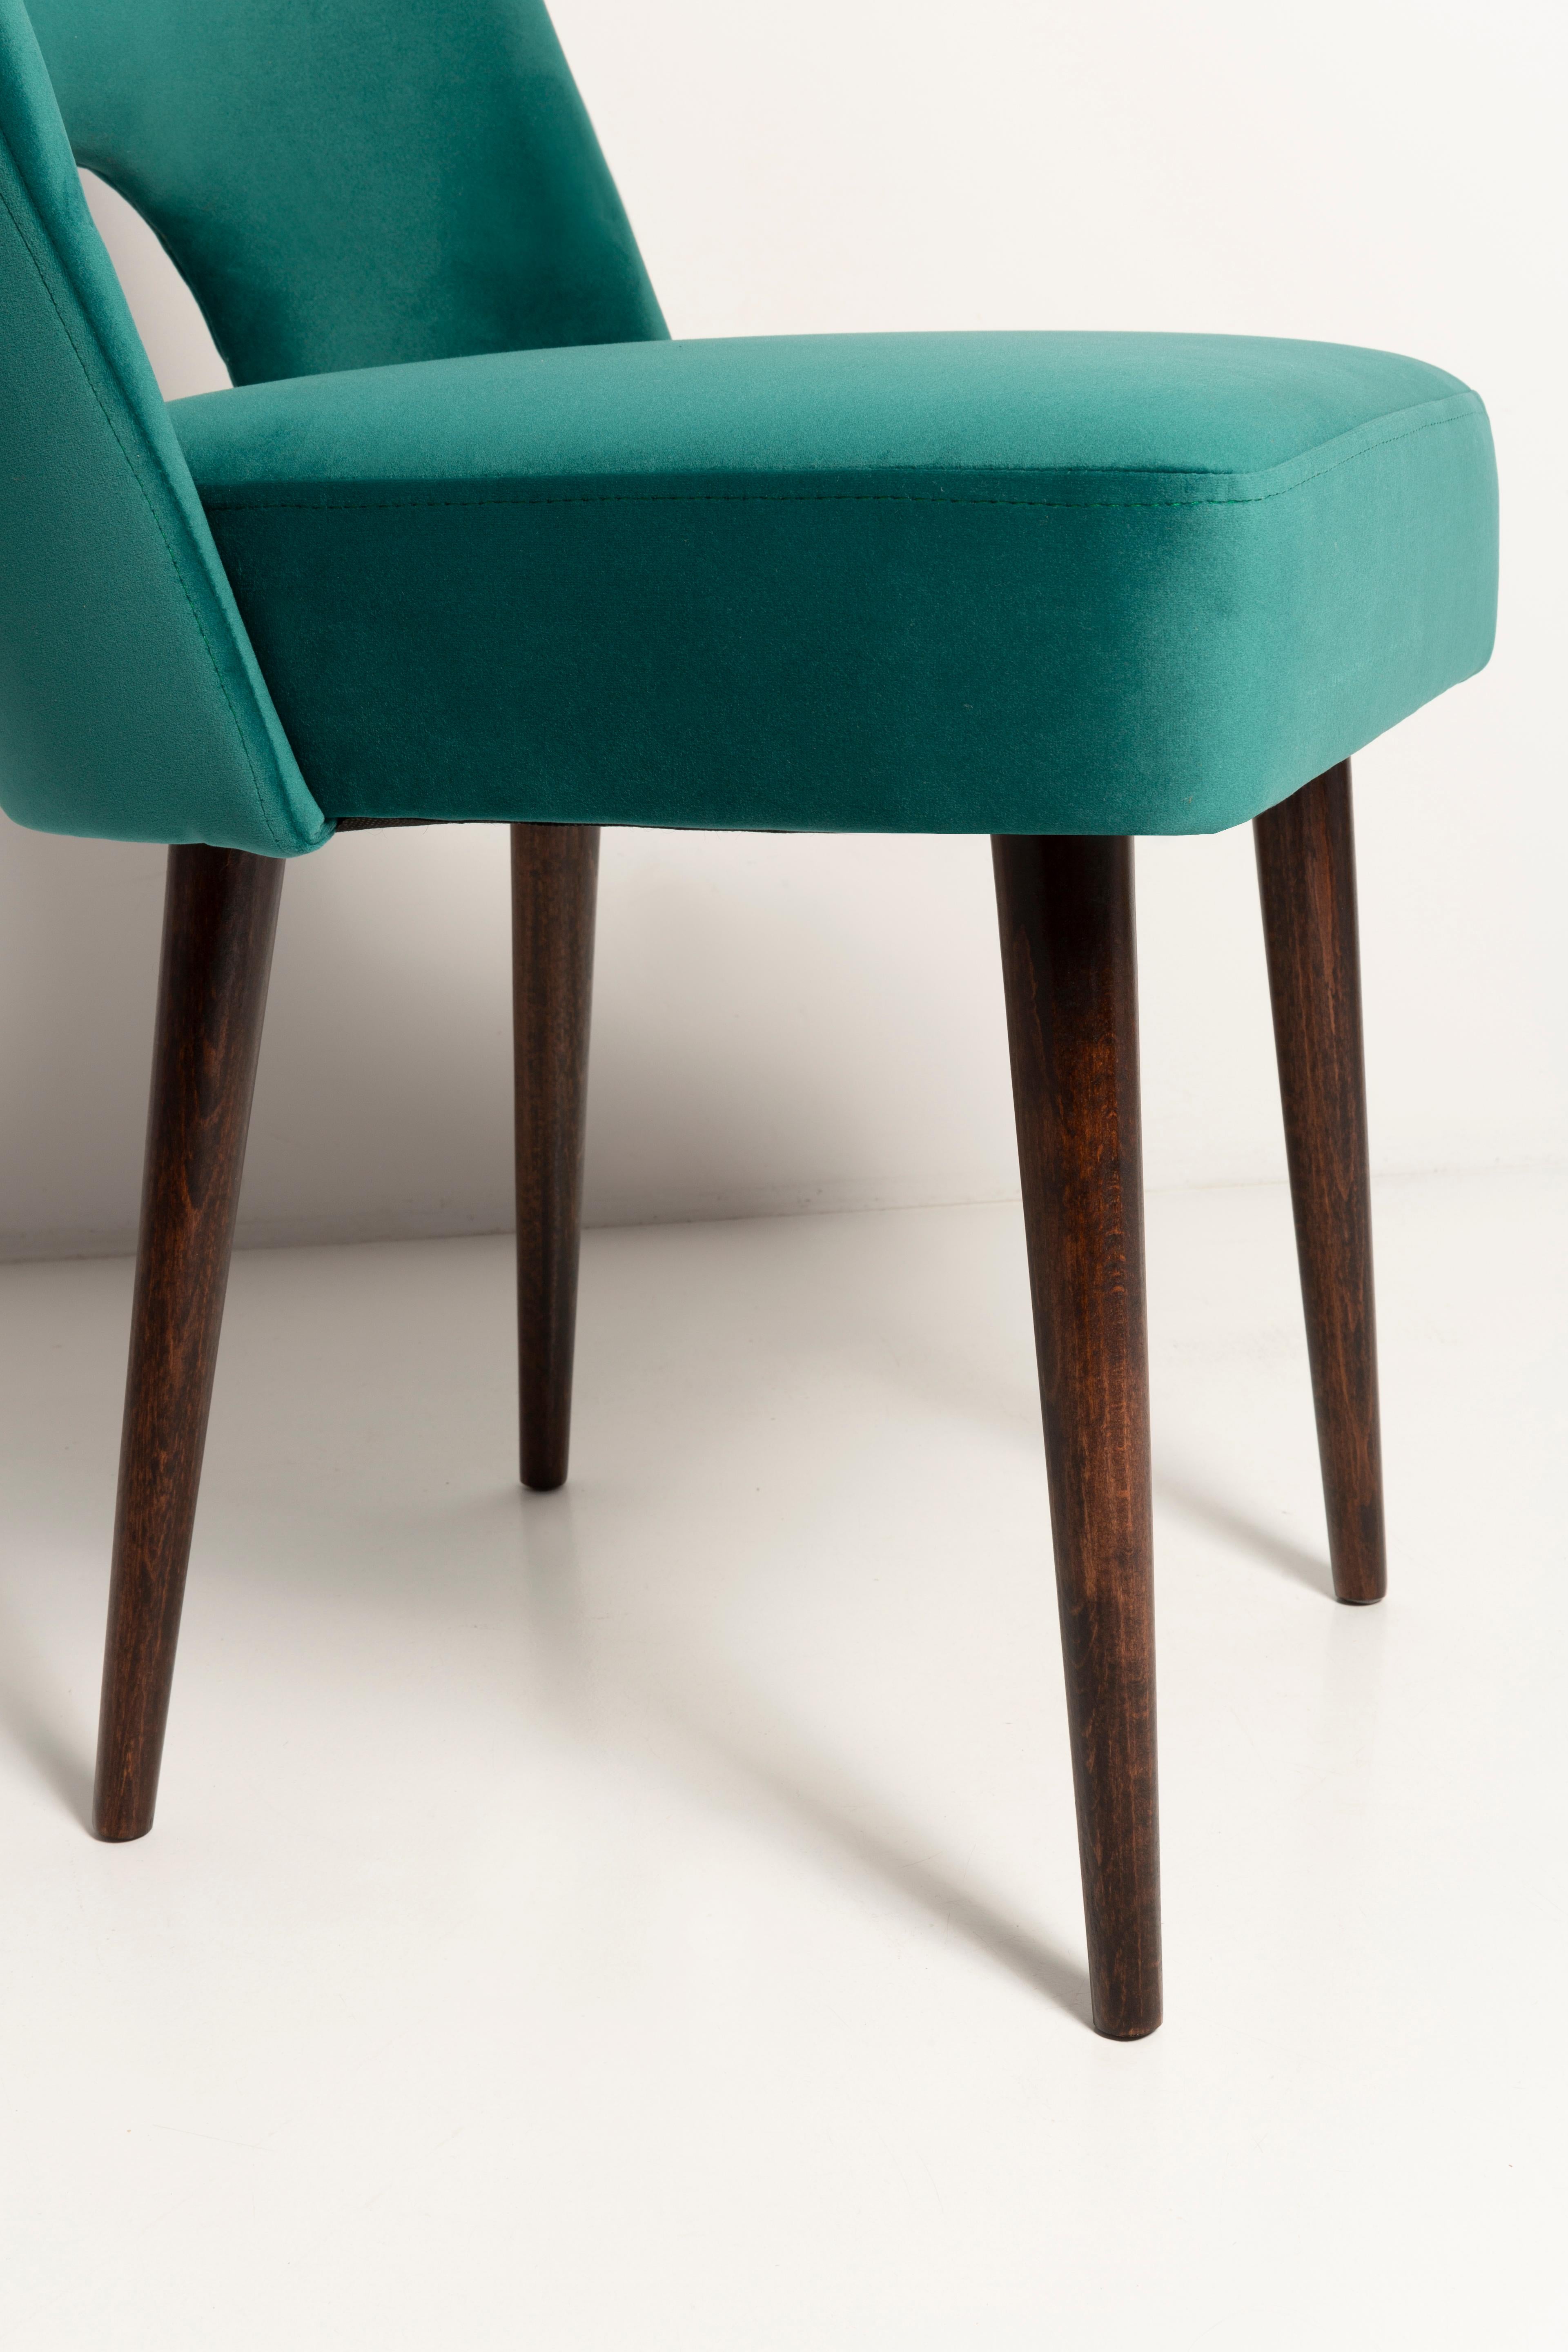 Dark Green Velvet 'Shell' Chair, Europe, 1960s For Sale 8